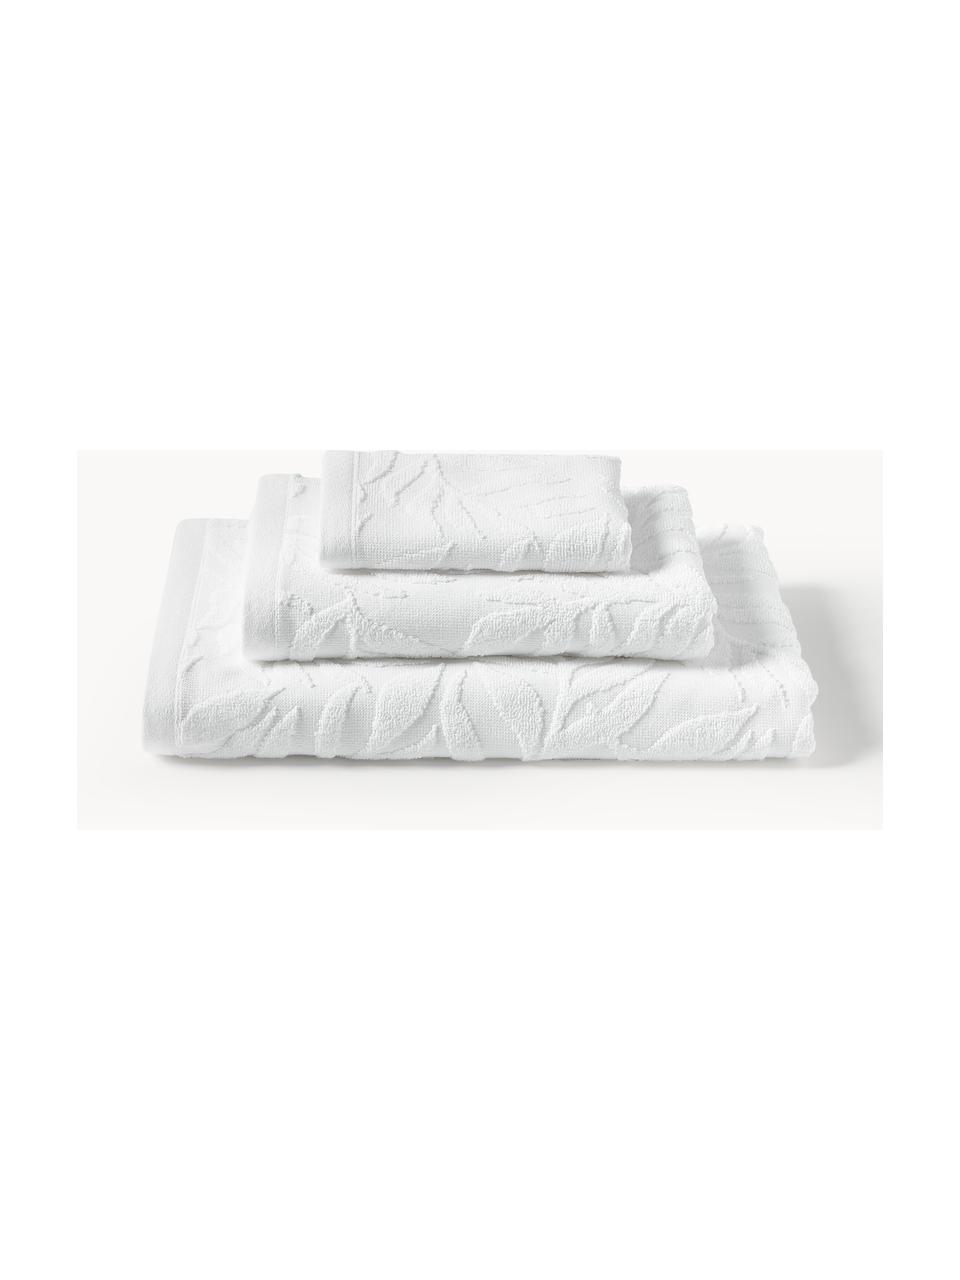 Set de toallas Leaf, tamaños diferentes, Blanco, Set de 3 (toalla tocador, toalla lavabo y toalla ducha)